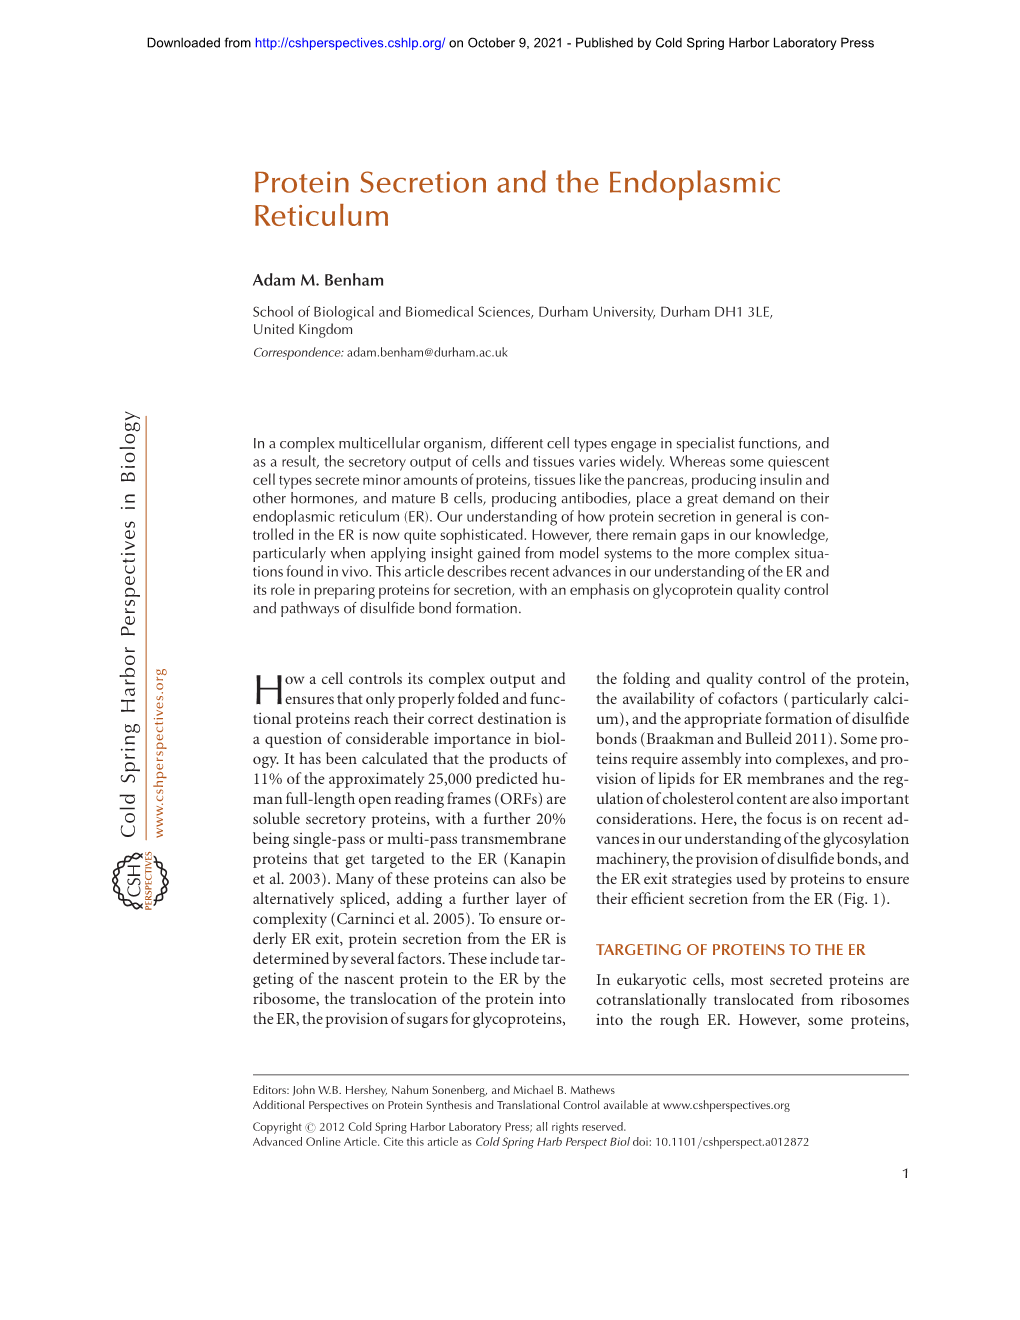 Protein Secretion and the Endoplasmic Reticulum